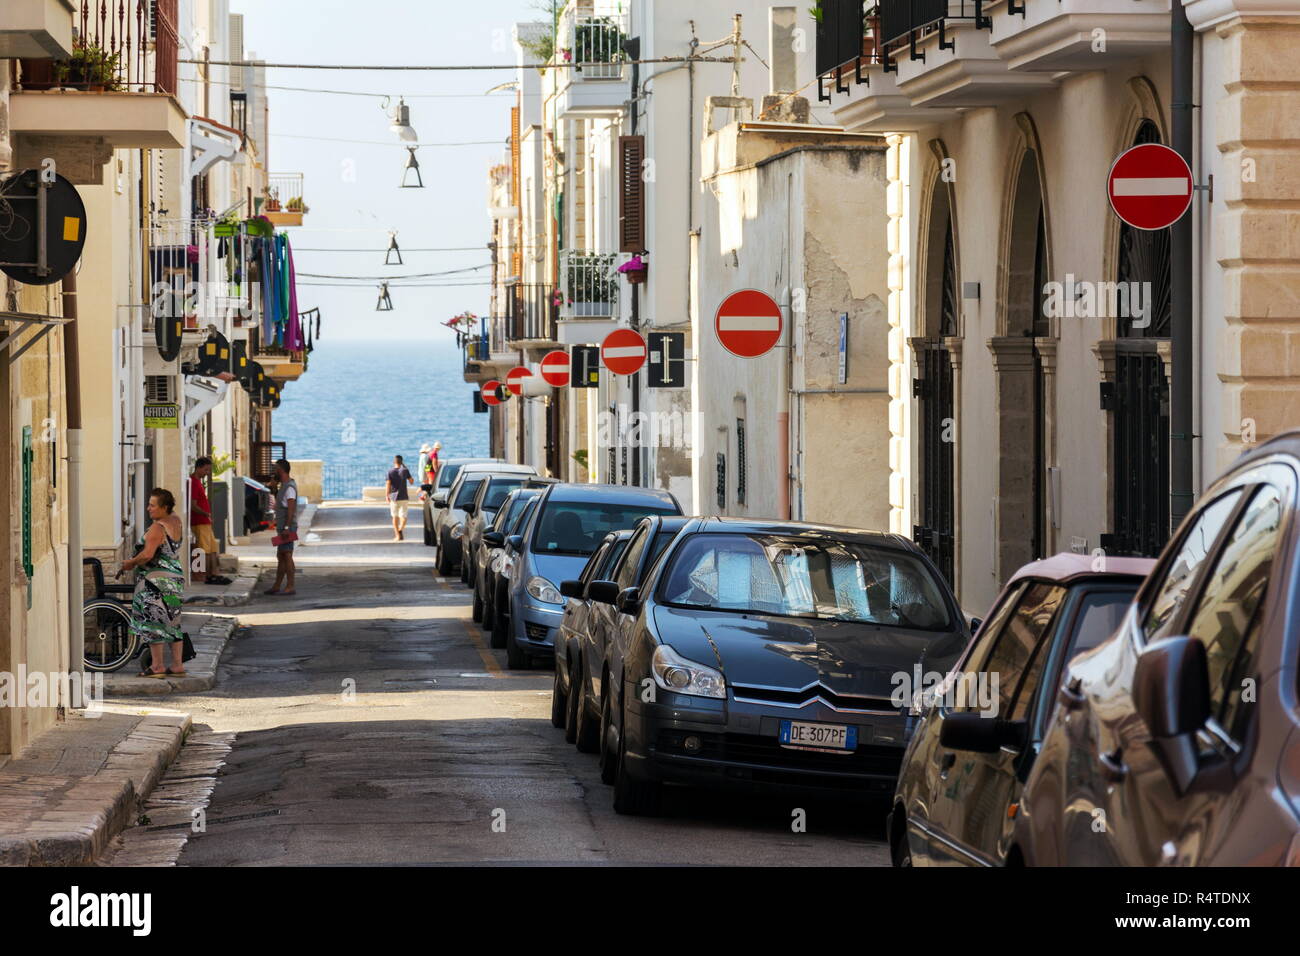 POLIGNANO A MARE, Italien - 6. JULI 2018: die Menschen entlang der parkenden Autos auf der Straße mit vielen kein Eintrag Verkehrszeichen am 6. Juli 2018 in Polignano a Mare Stockfoto